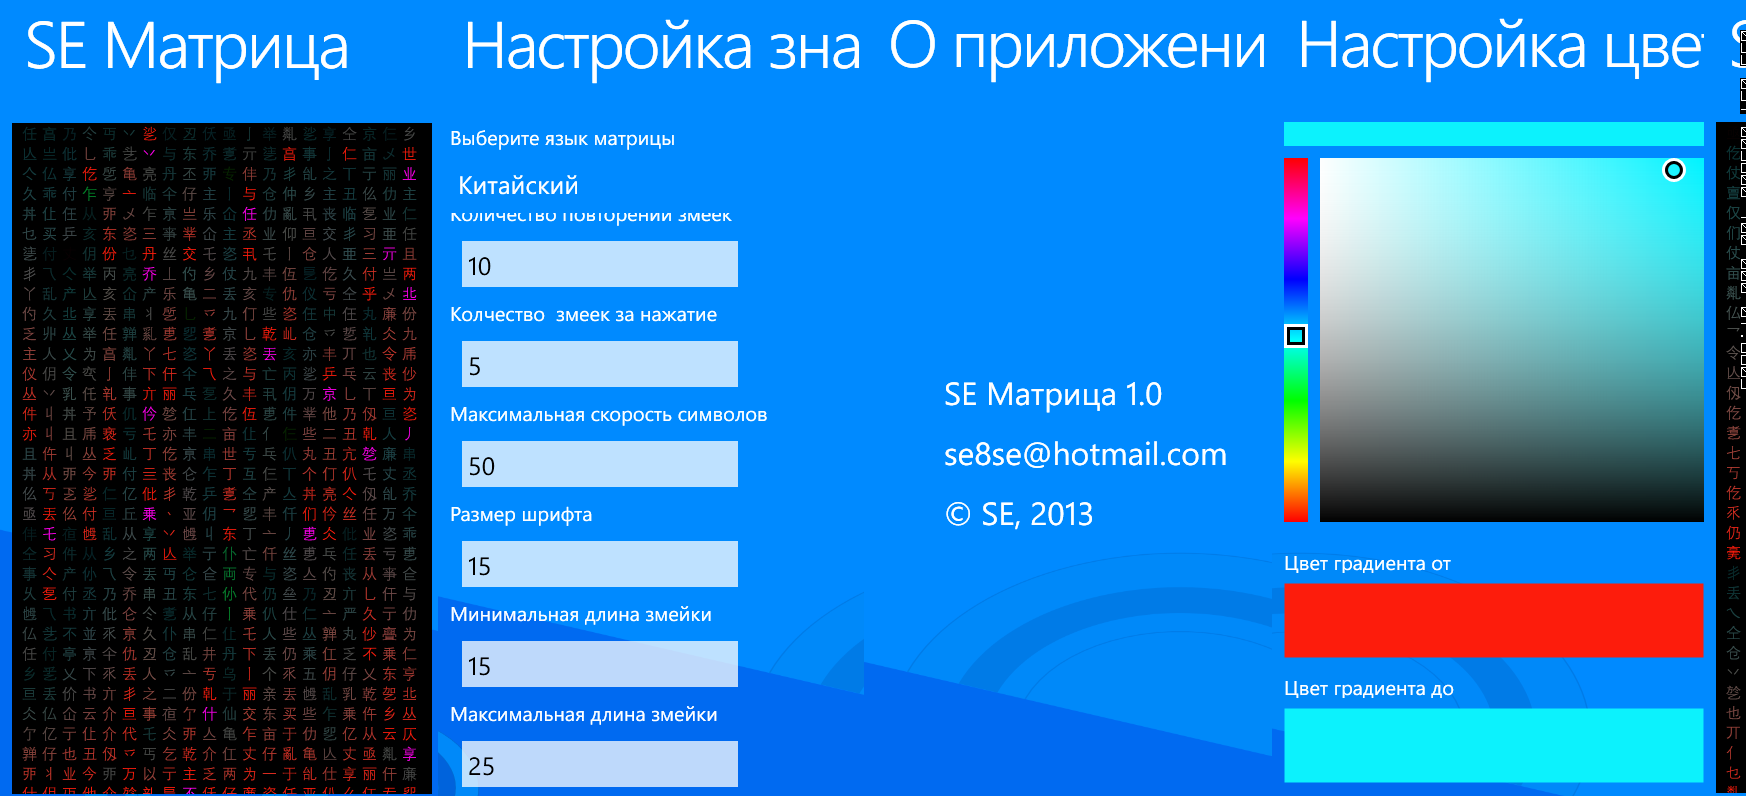 Windows Phone 8: Создаем приложение. Матрица. Часть 3. MVVM